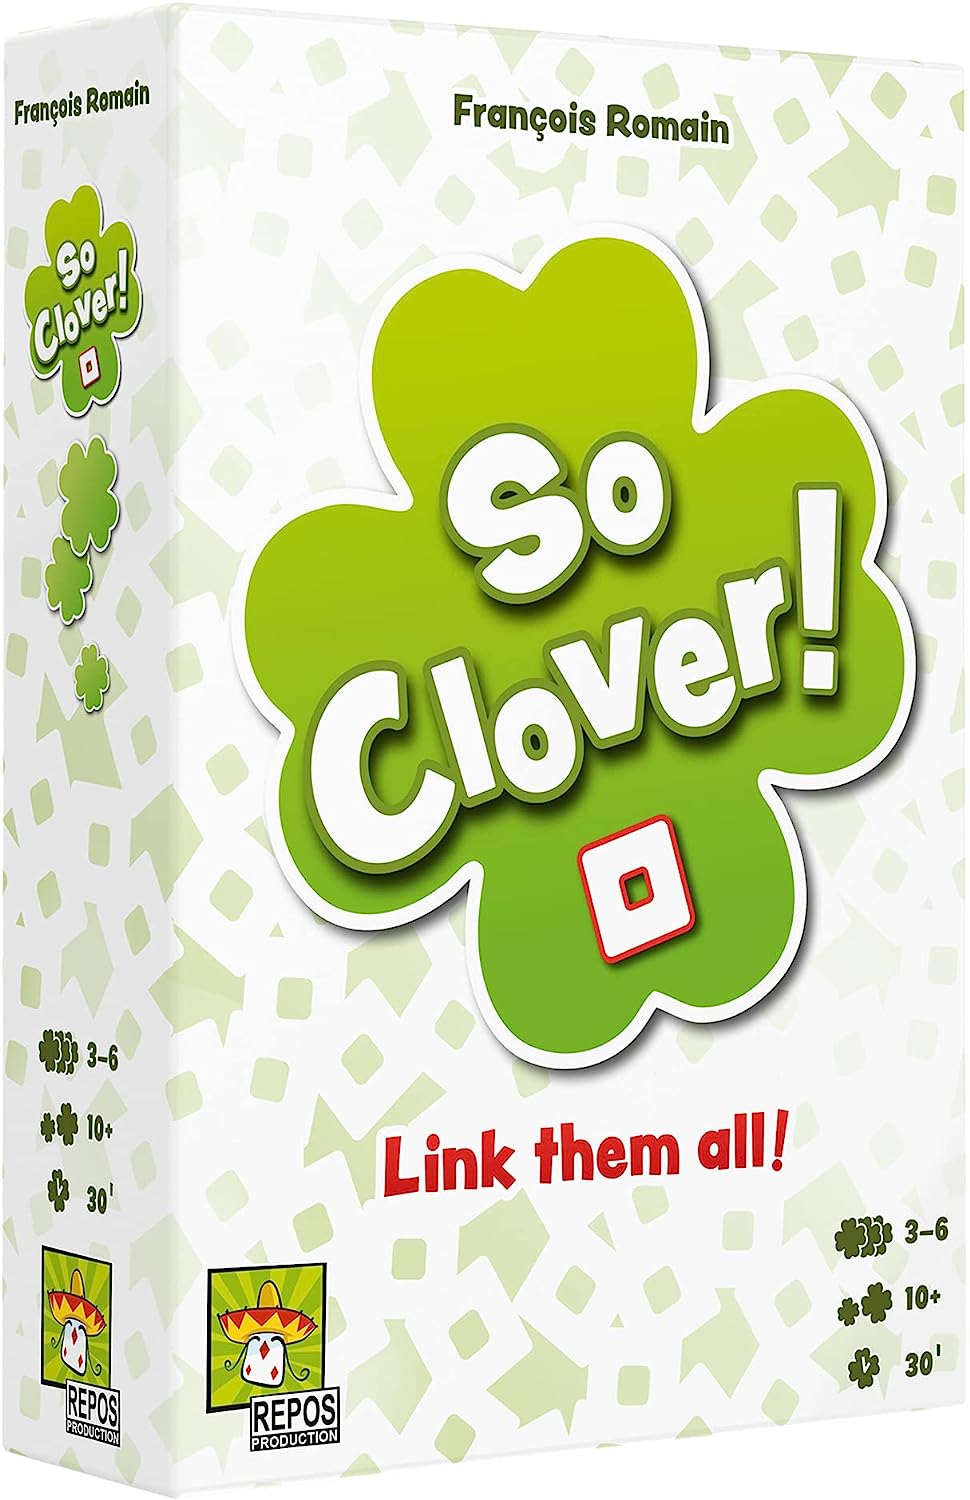 So Clover! – Blickenstaffs Toy Store